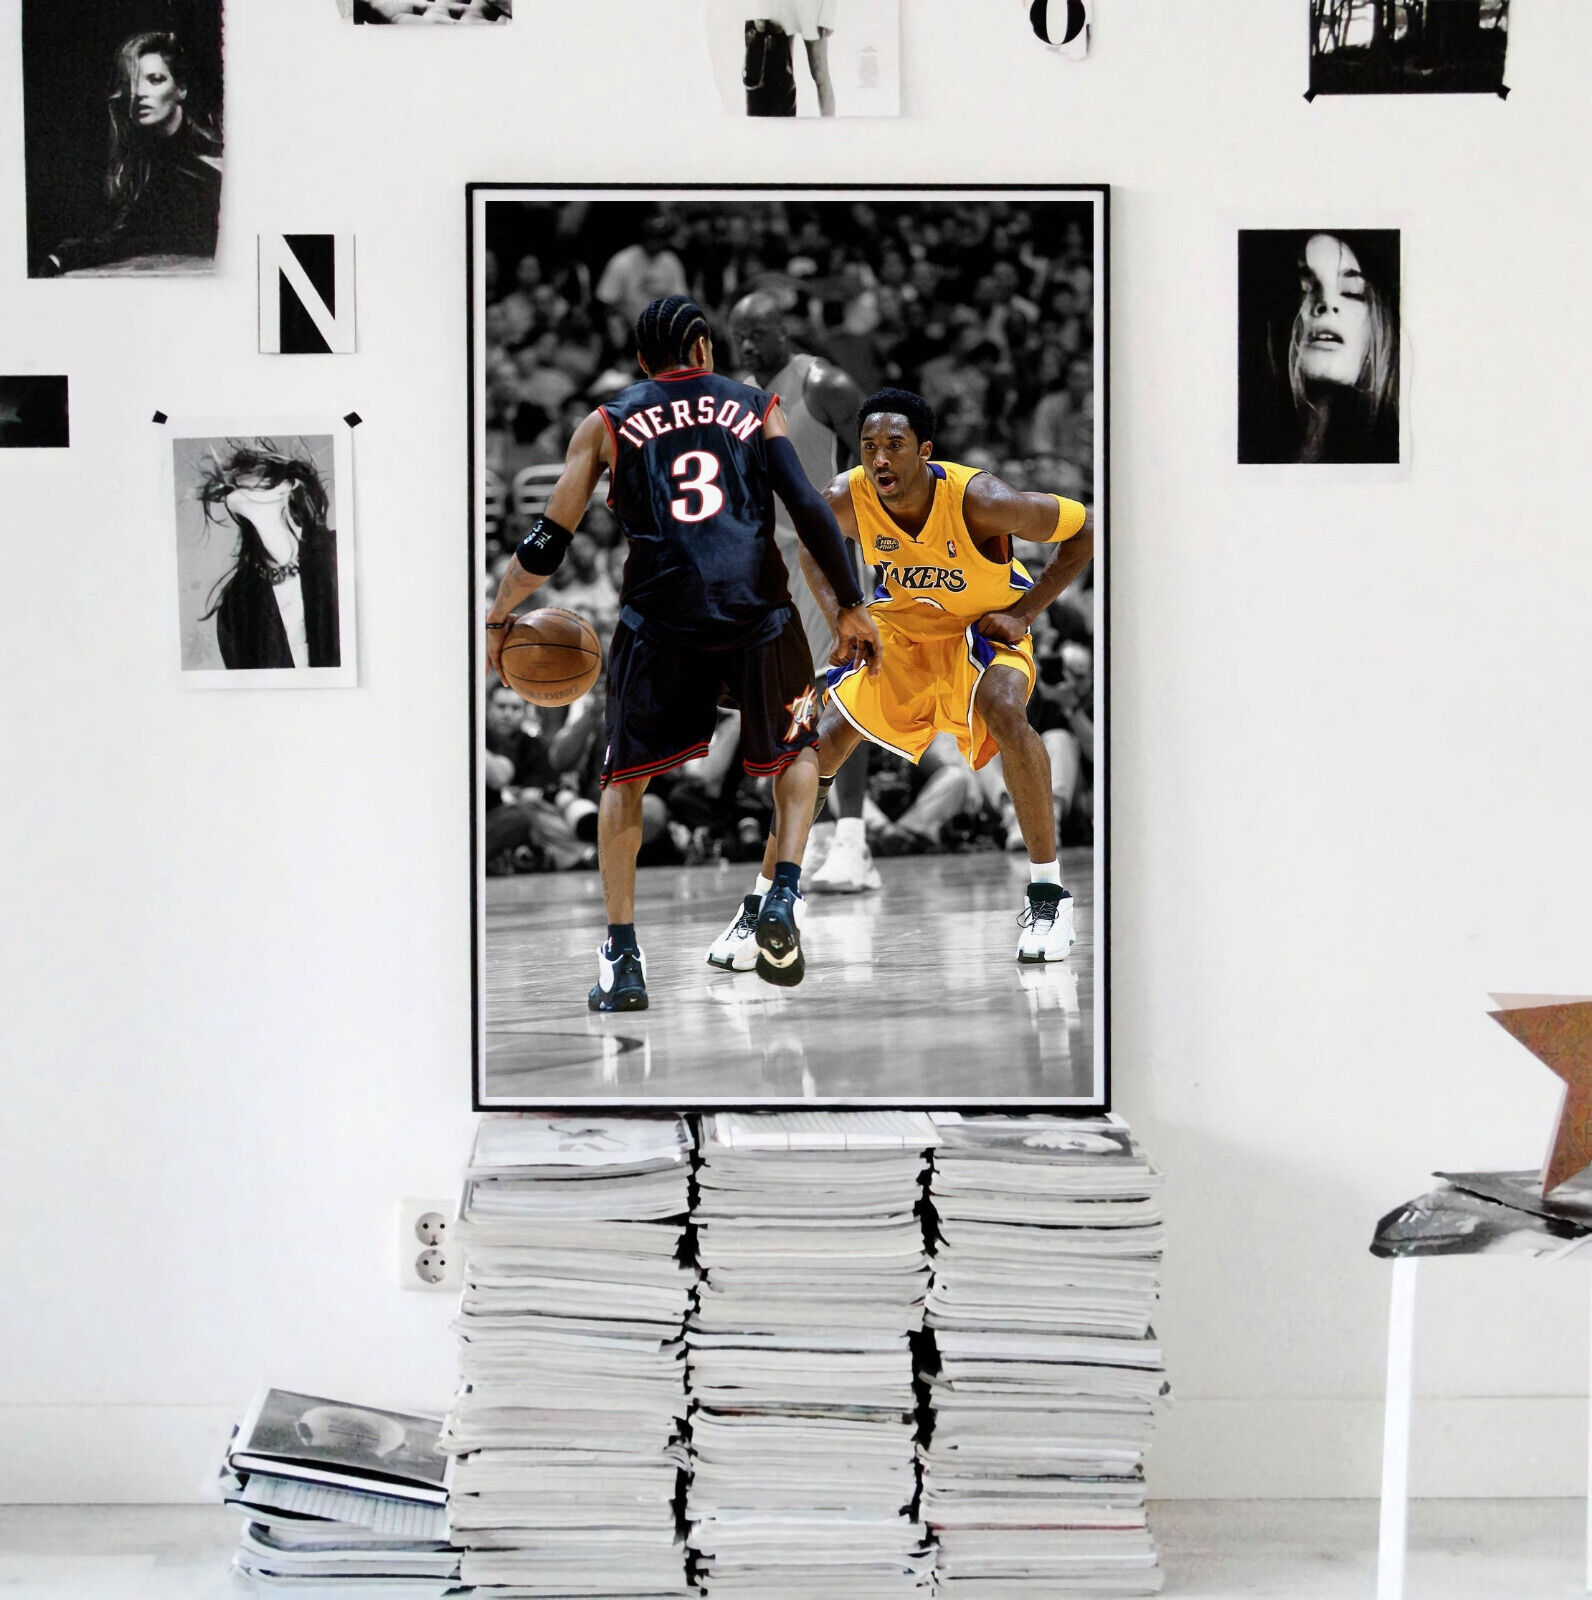 Allen Iverson Dribble & kobe bryant Basketball Star - Poster 12 x 18 inch  Poster Print Frameless Art Gift 30 x 46 cm Paper 